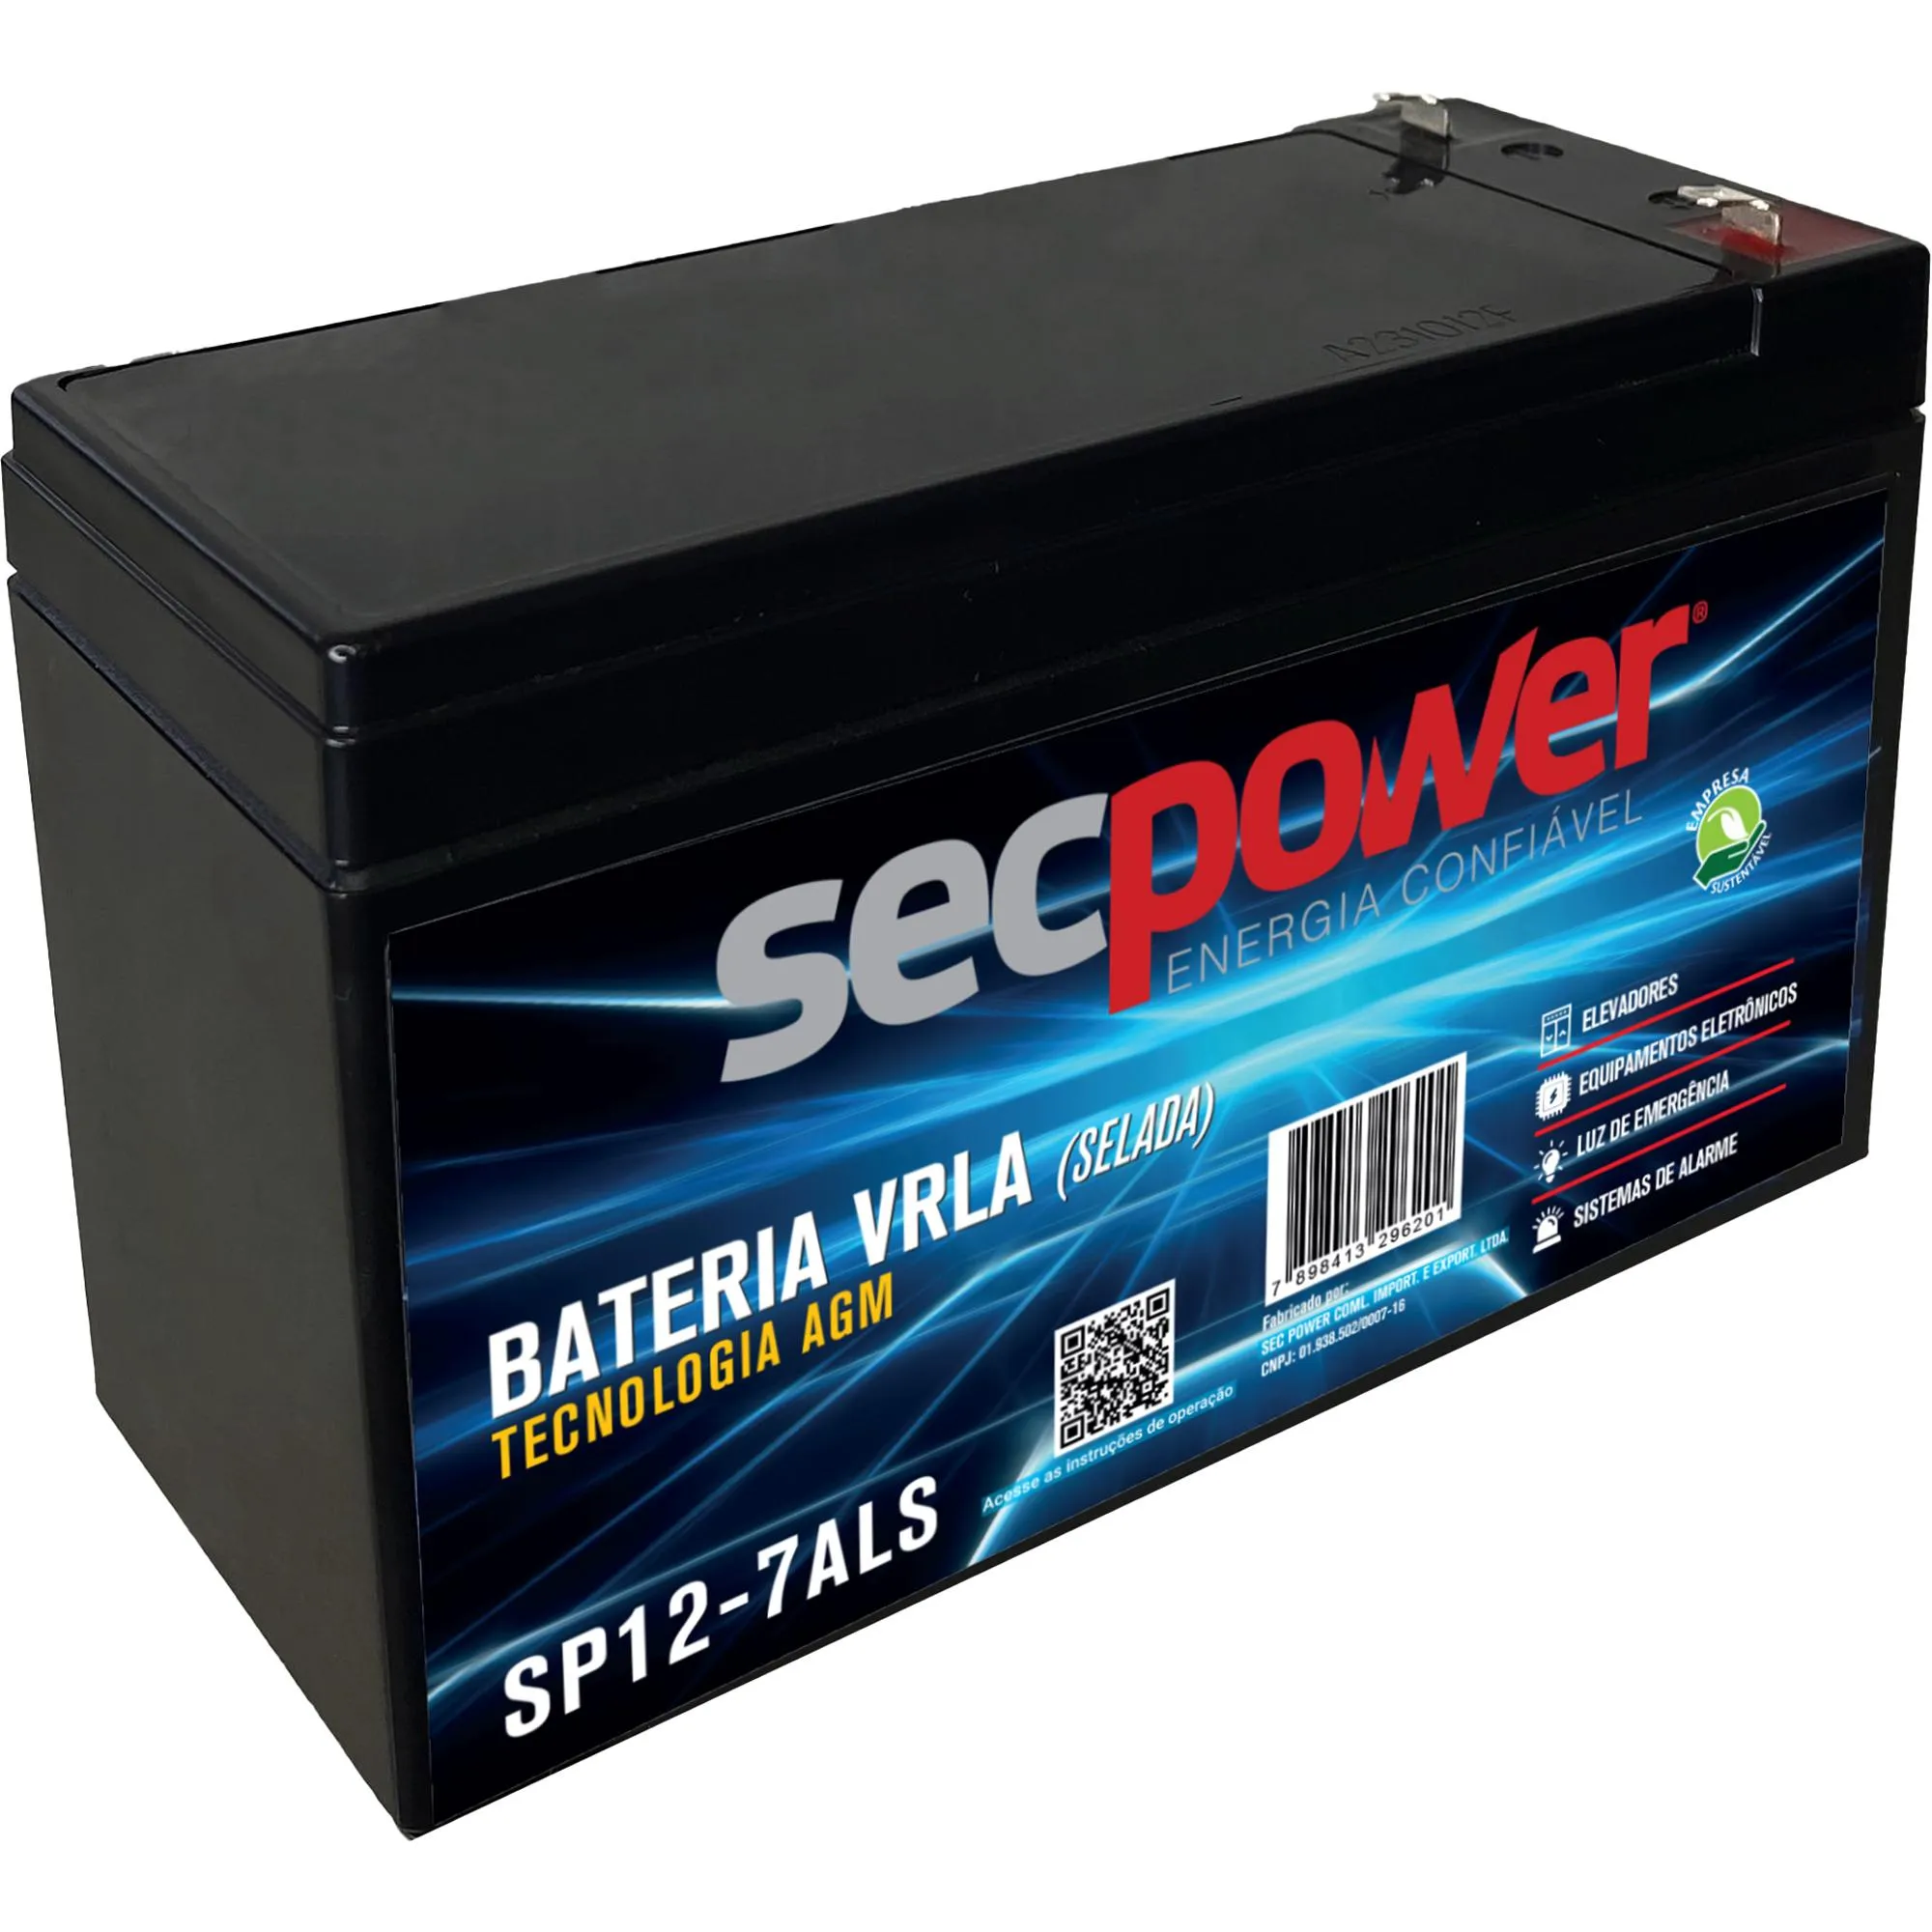 Bateria Selada 12V 7Ah SP12-7ALS SecPower (83939)